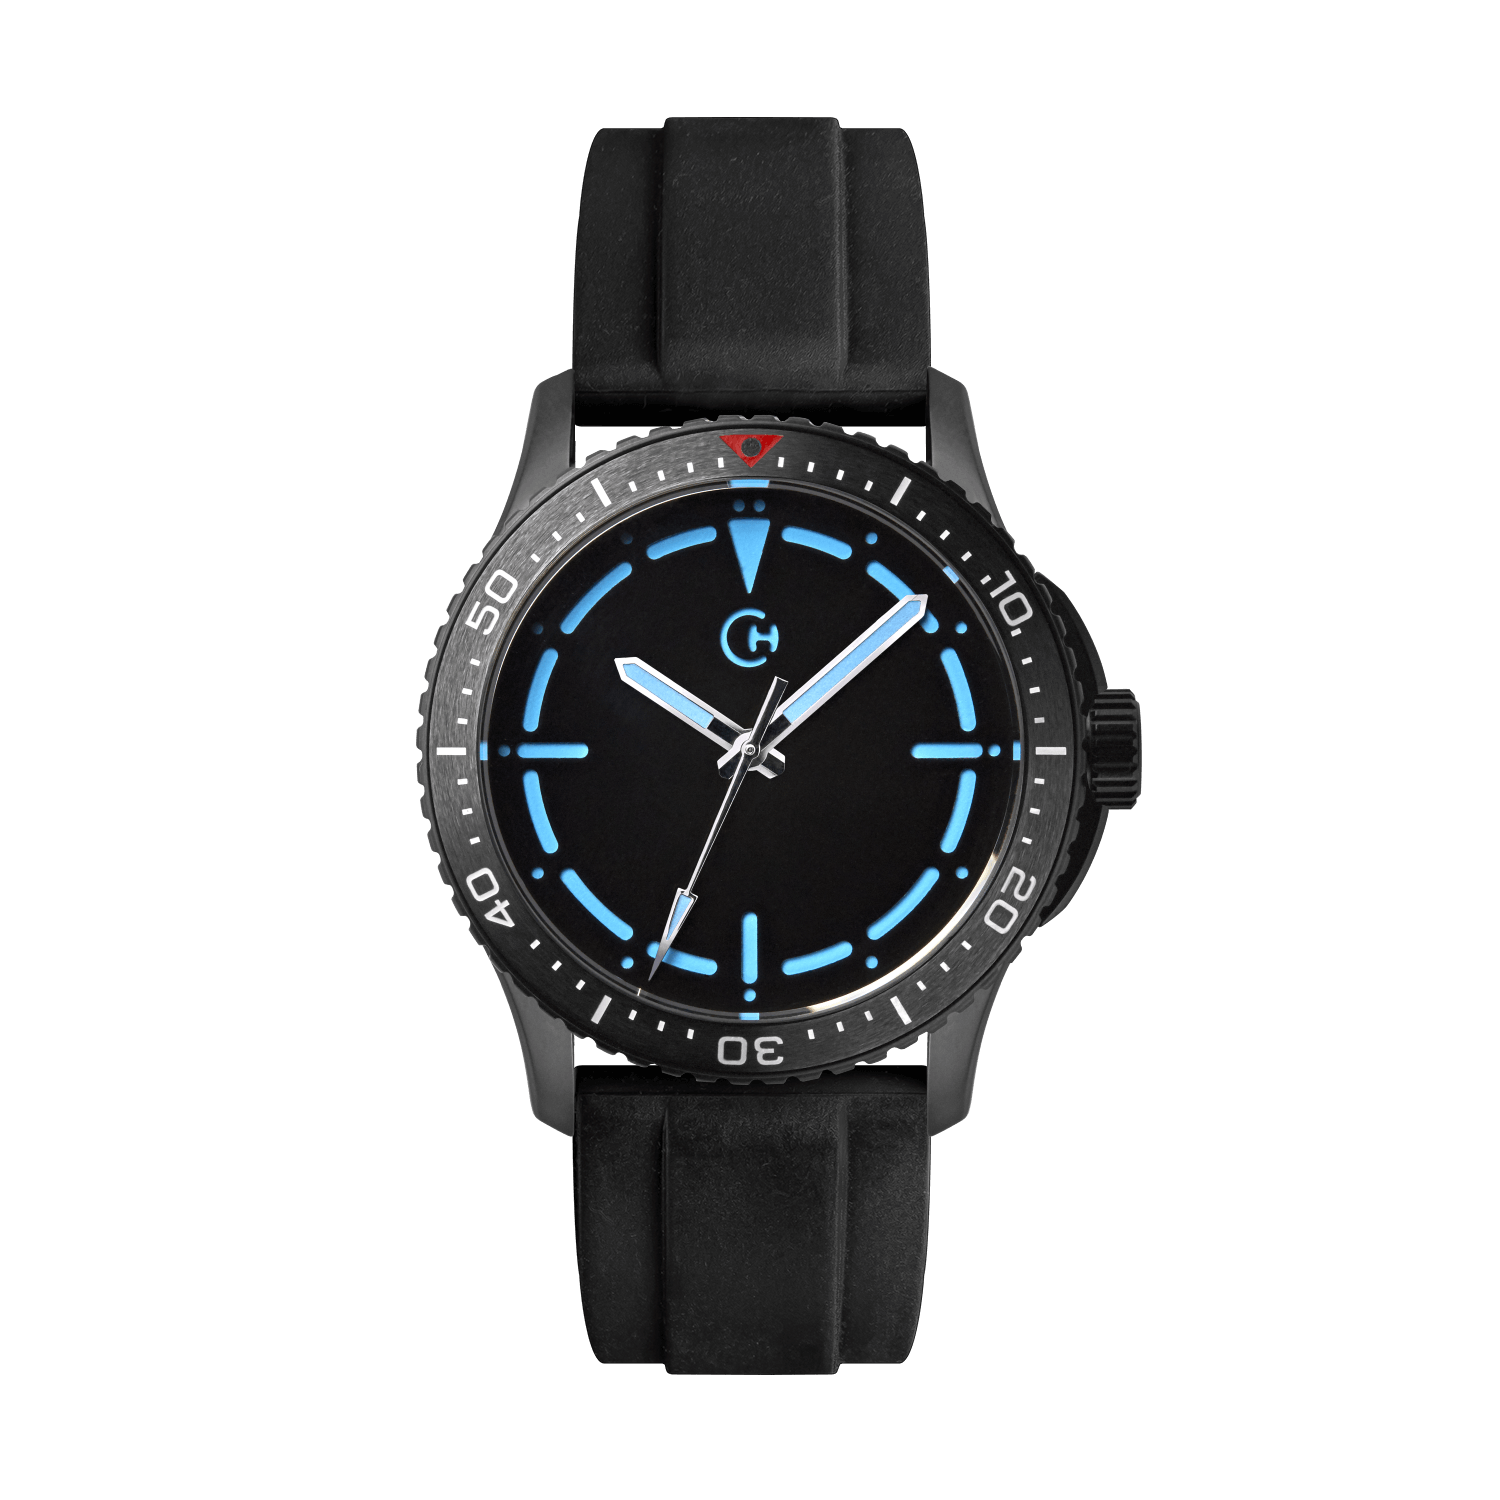 SeaQuest Dive černý gumový řemínek, 22mm, rychloupínací stěžejka, potápěčské hodinky Chronotechna modrý číselník, DLC pouzdro